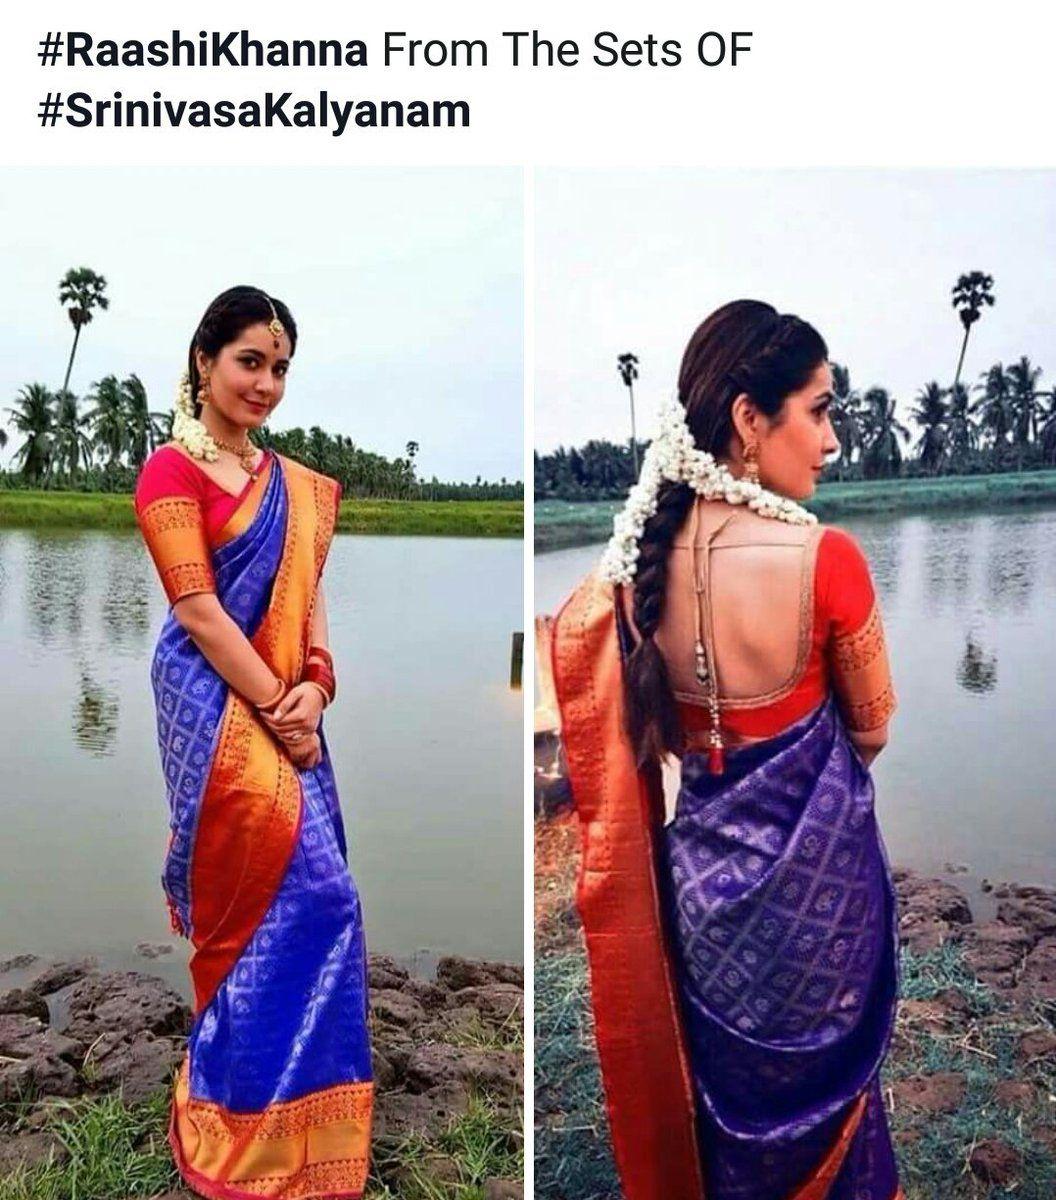 Here are the beautiful working stills from Srinivasa Kalyanam